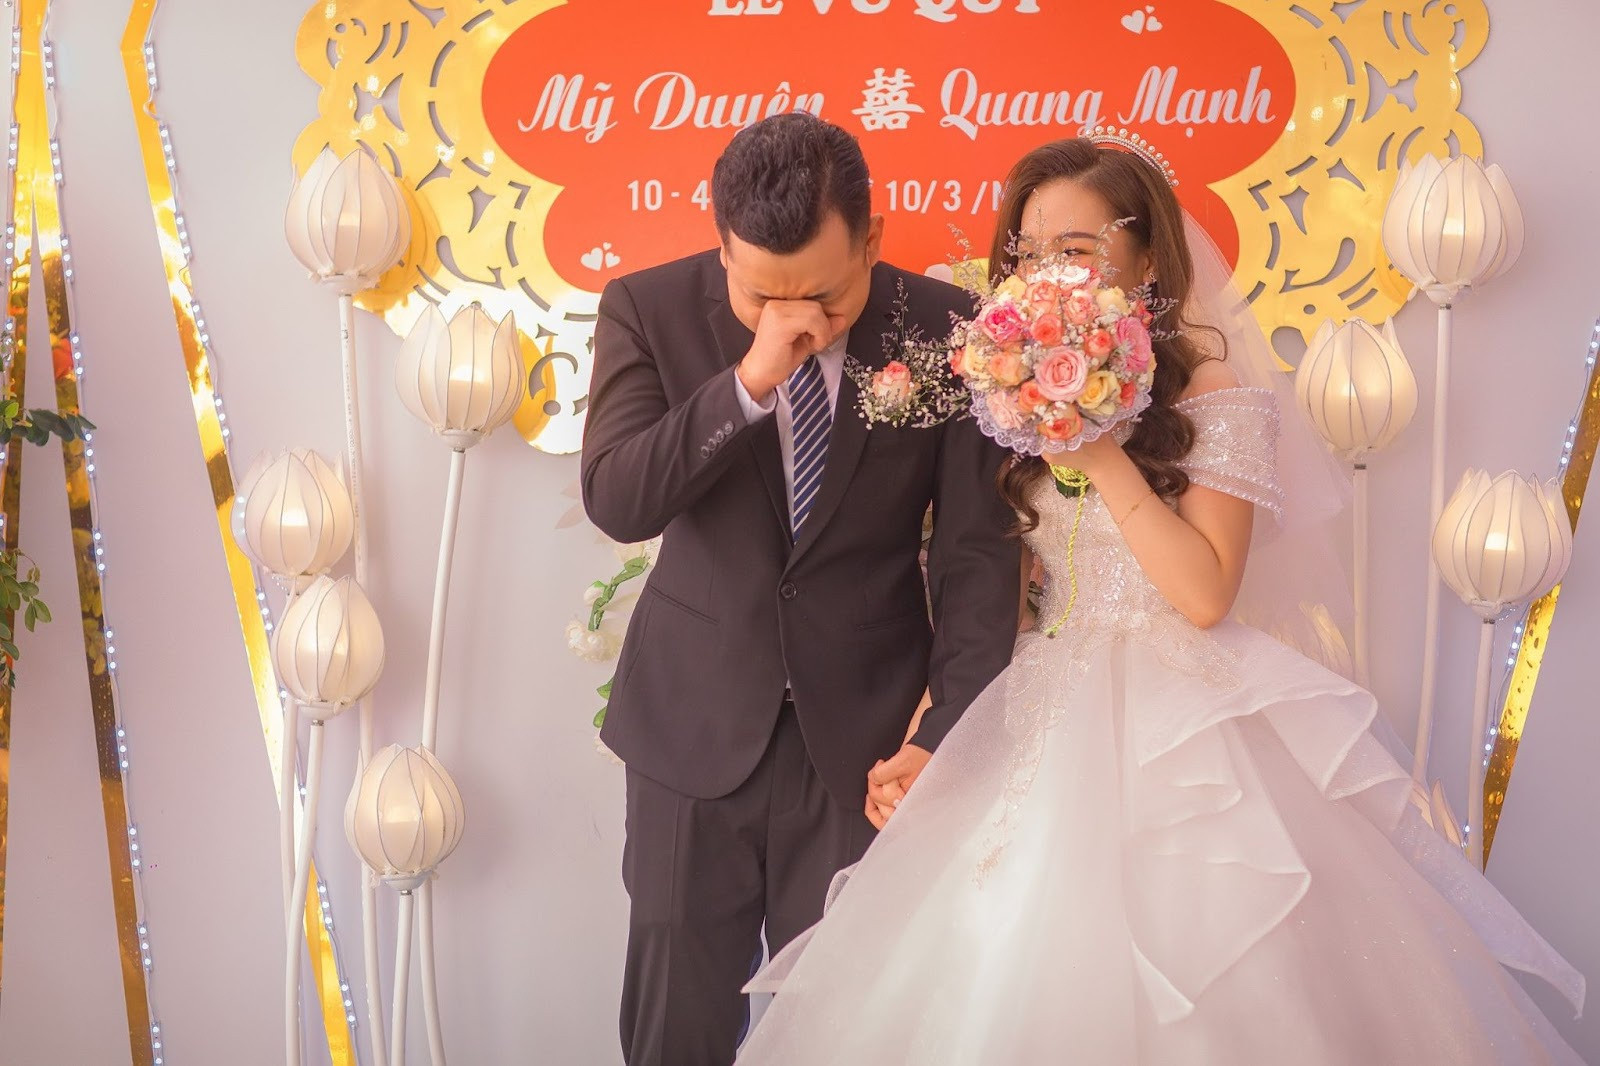 Chú rể bật khóc nức nở, nắm chặt tay bố vợ trong đám cưới ở Bắc Giang - 2